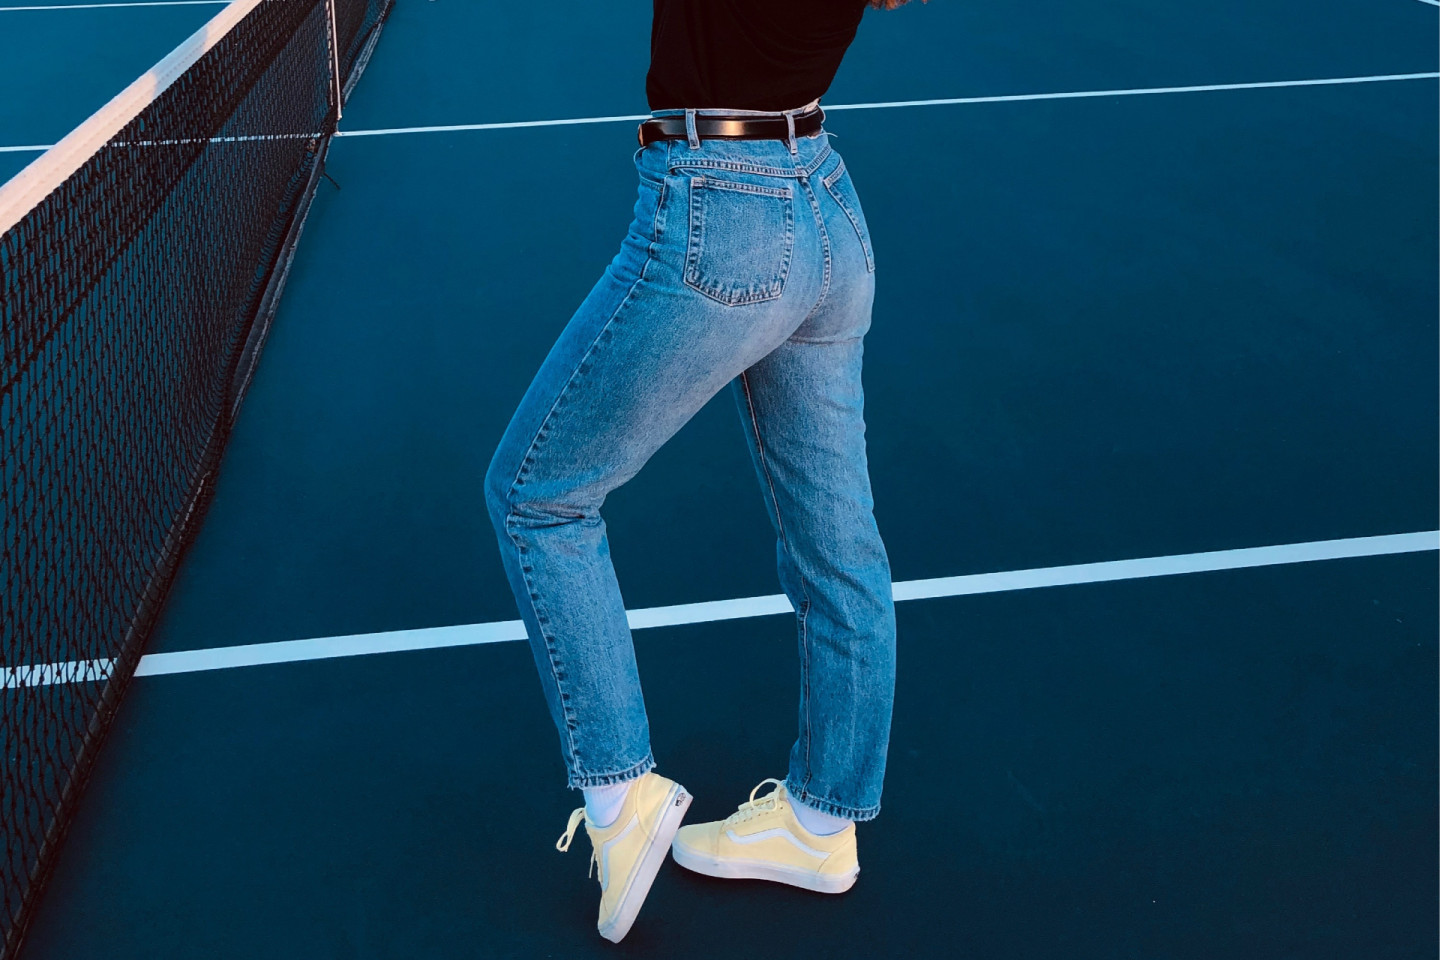 При типе фигуры «груша» избегайте укороченных и облегающих штанов, отдавая предпочтение моделям, которые визуально удлиняют силуэт, например, прямым классическим джинсам